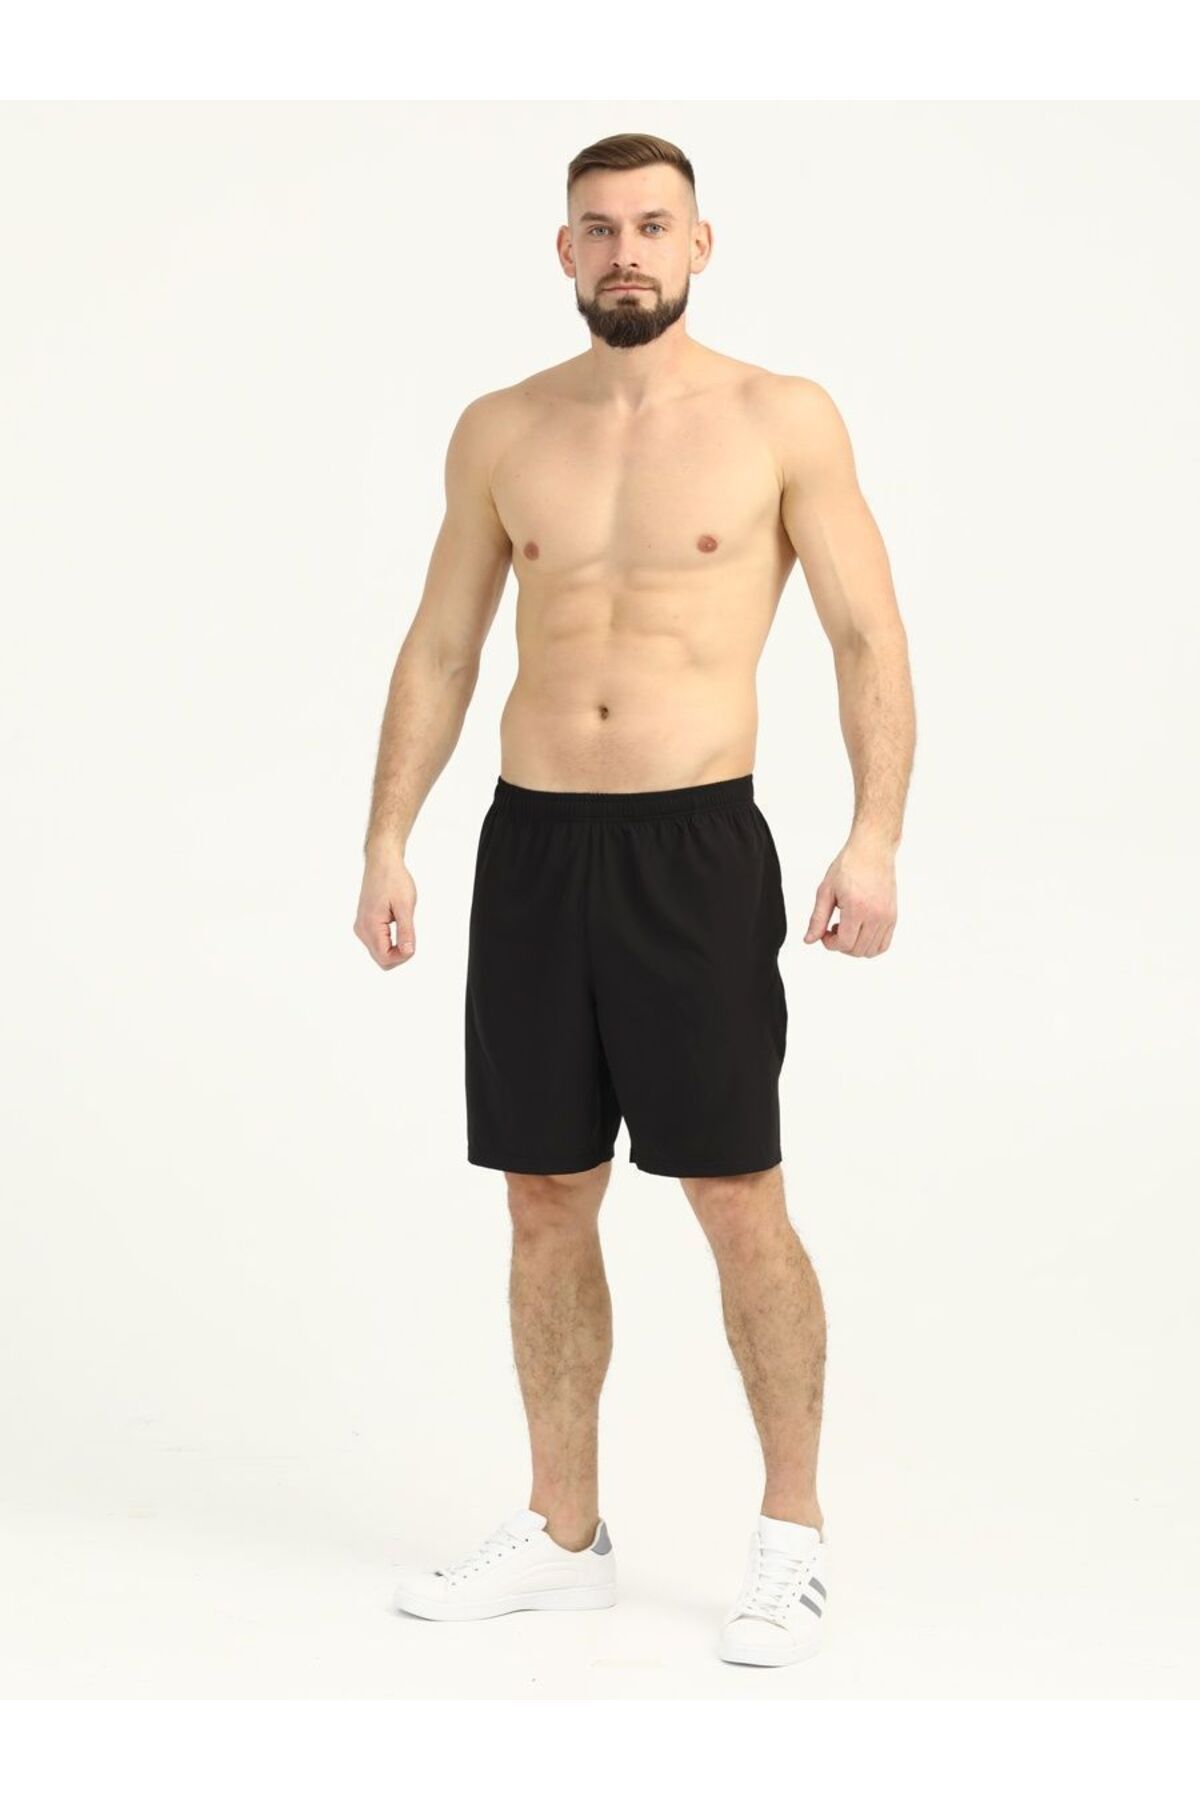 MİSTİRİK Viterbo Model Atletik Boks Şortu Hafif Kullanışlı Bol Kesim Penye Şort Siyah Renk